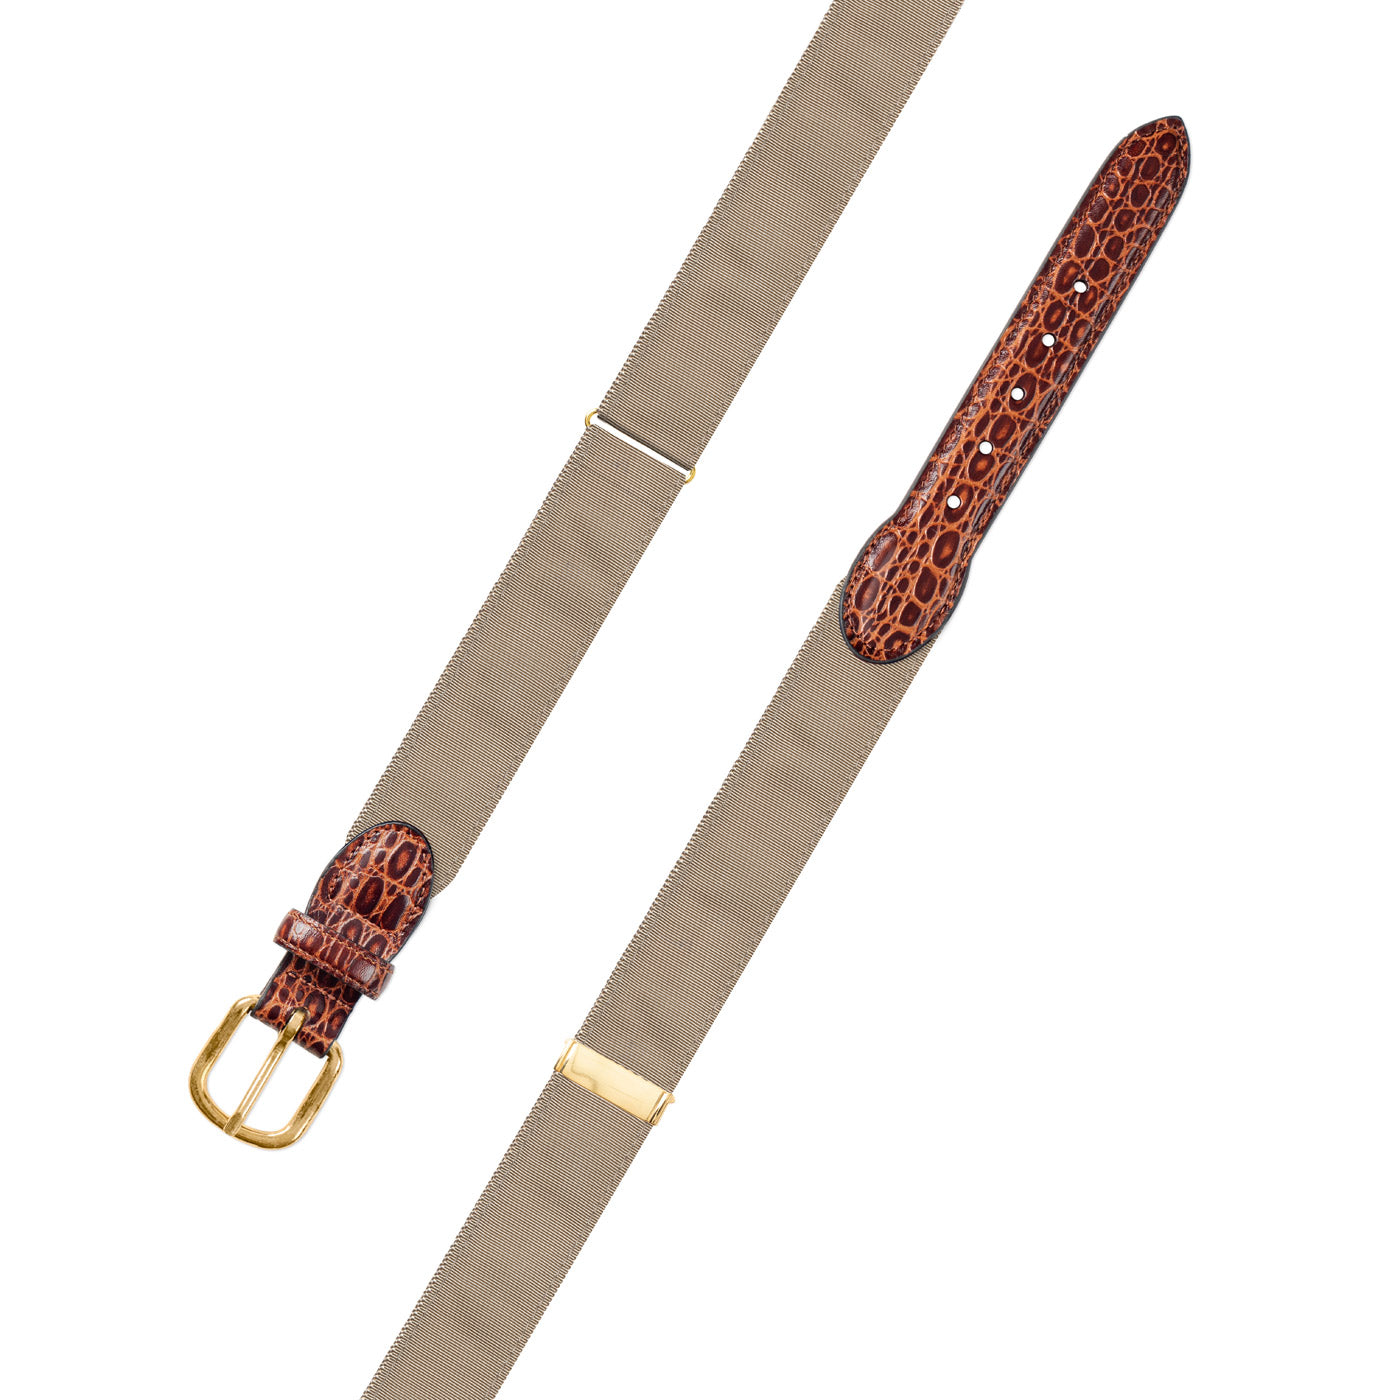 Adjustable Tab Braided Belt